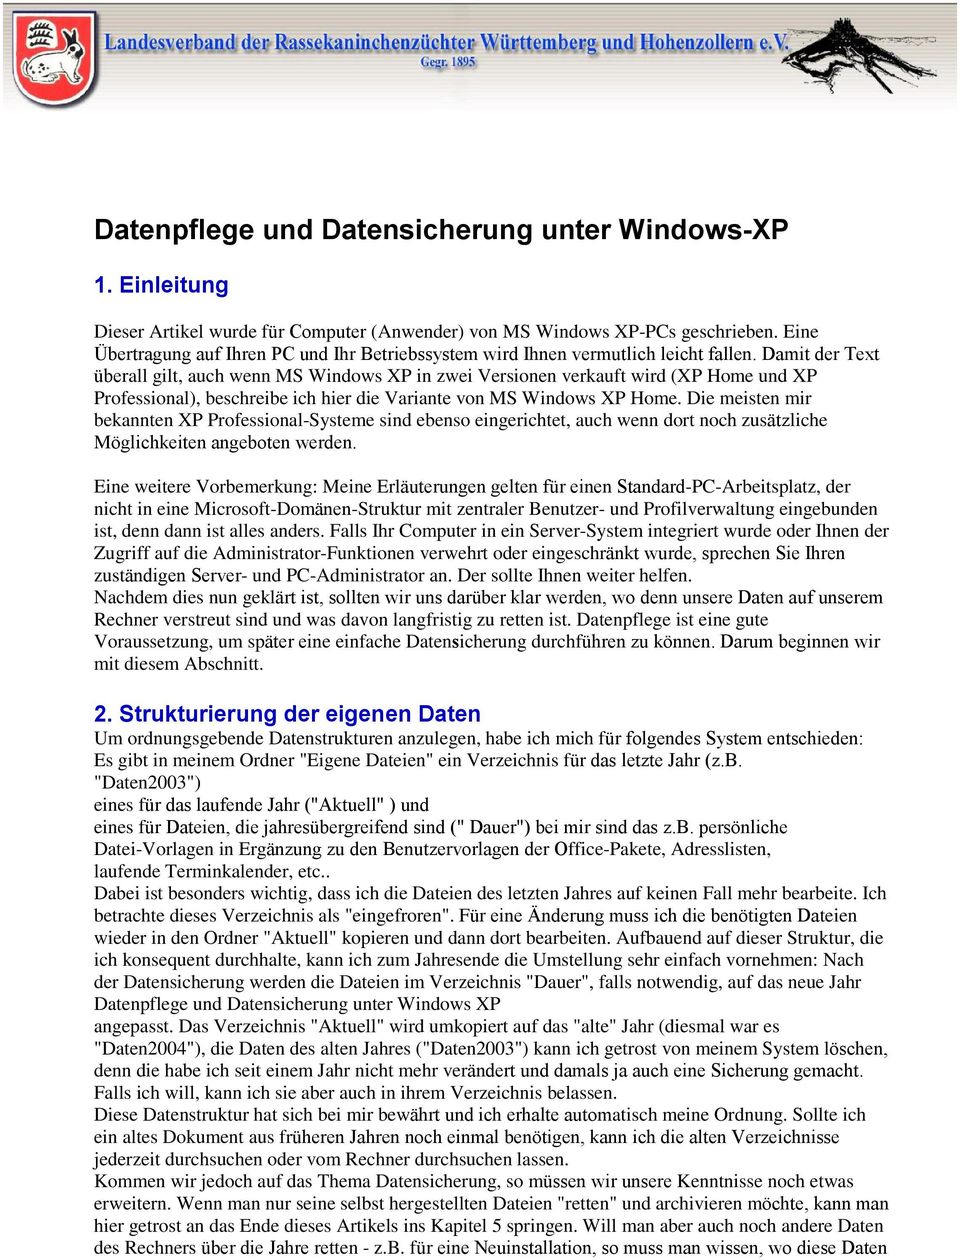 Damit der Text überall gilt, auch wenn MS Windows XP in zwei Versionen verkauft wird (XP Home und XP Professional), beschreibe ich hier die Variante von MS Windows XP Home.